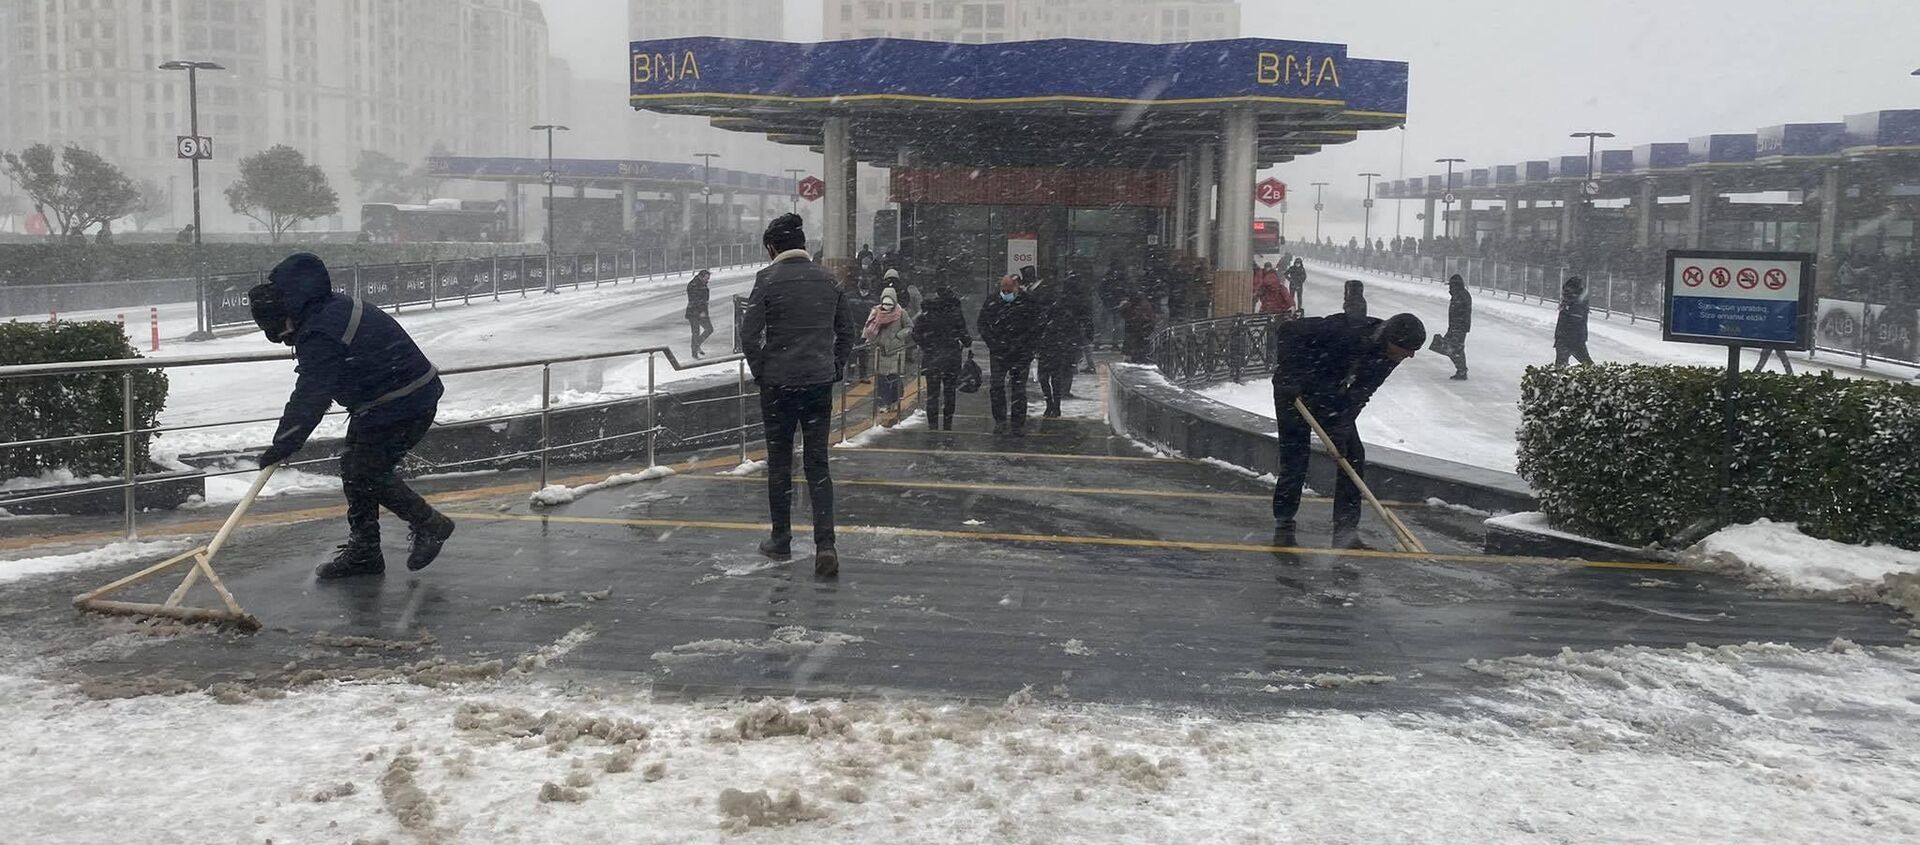 Автобусная остоновка во время снега в Баку, 24 февраля 2021 года - Sputnik Азербайджан, 1920, 24.02.2021